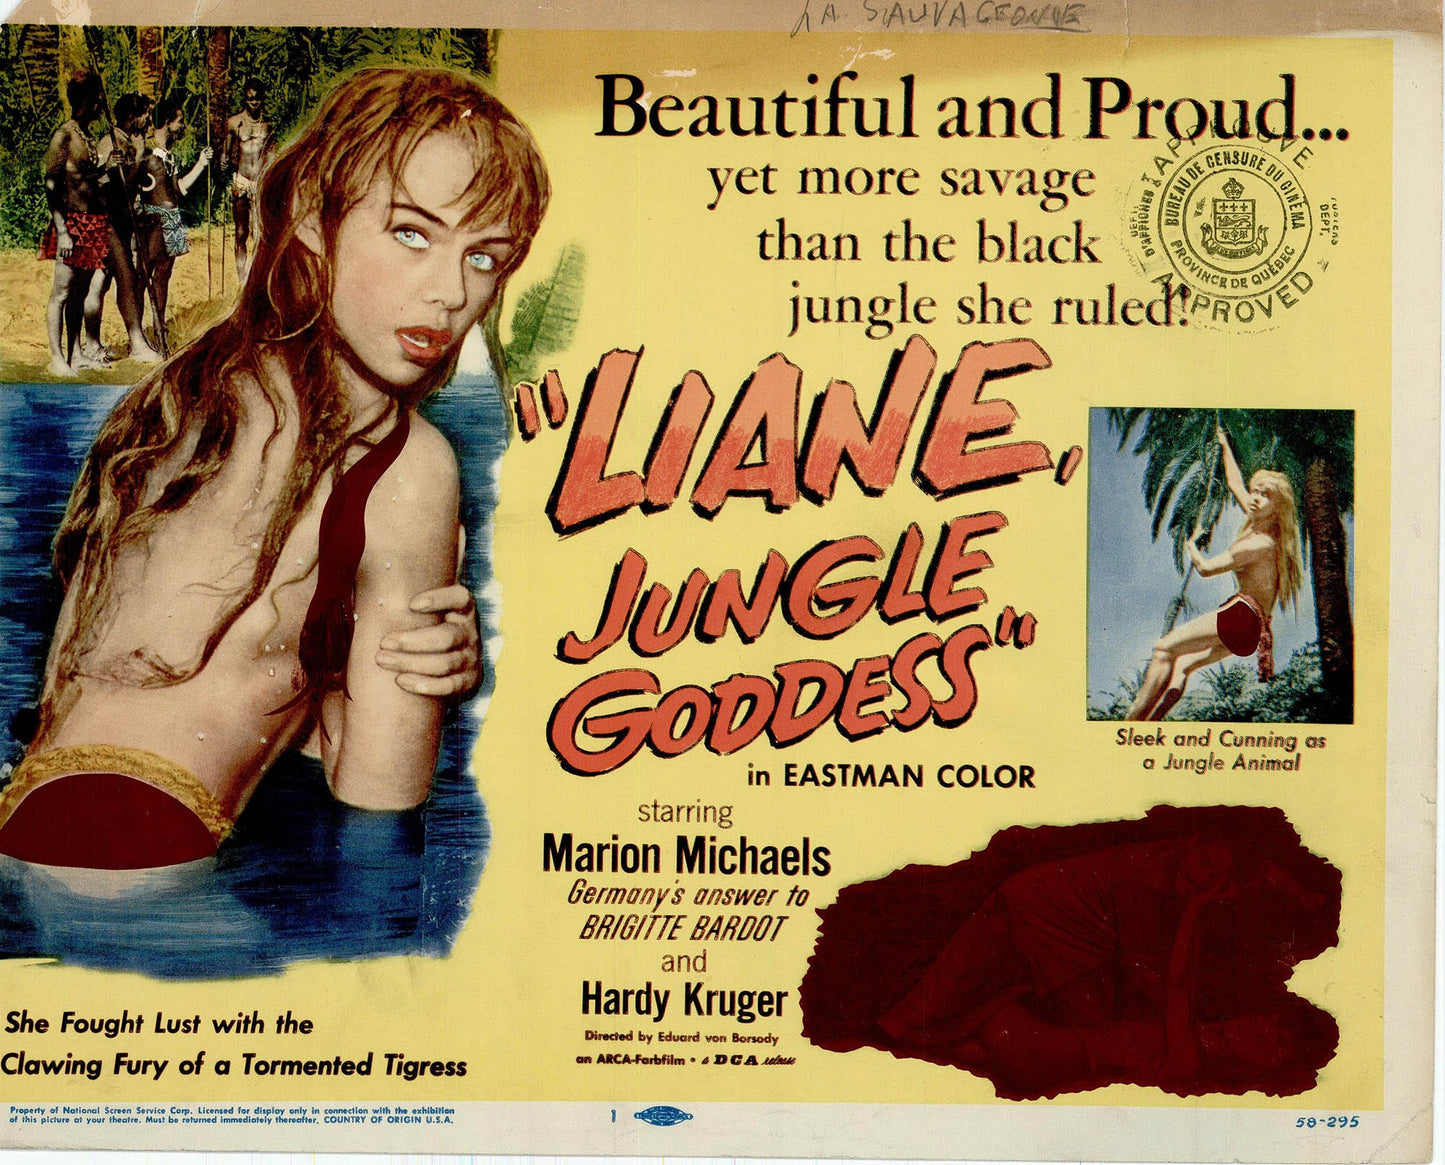 Liane Jungle Goddess - Movie Lobby Card